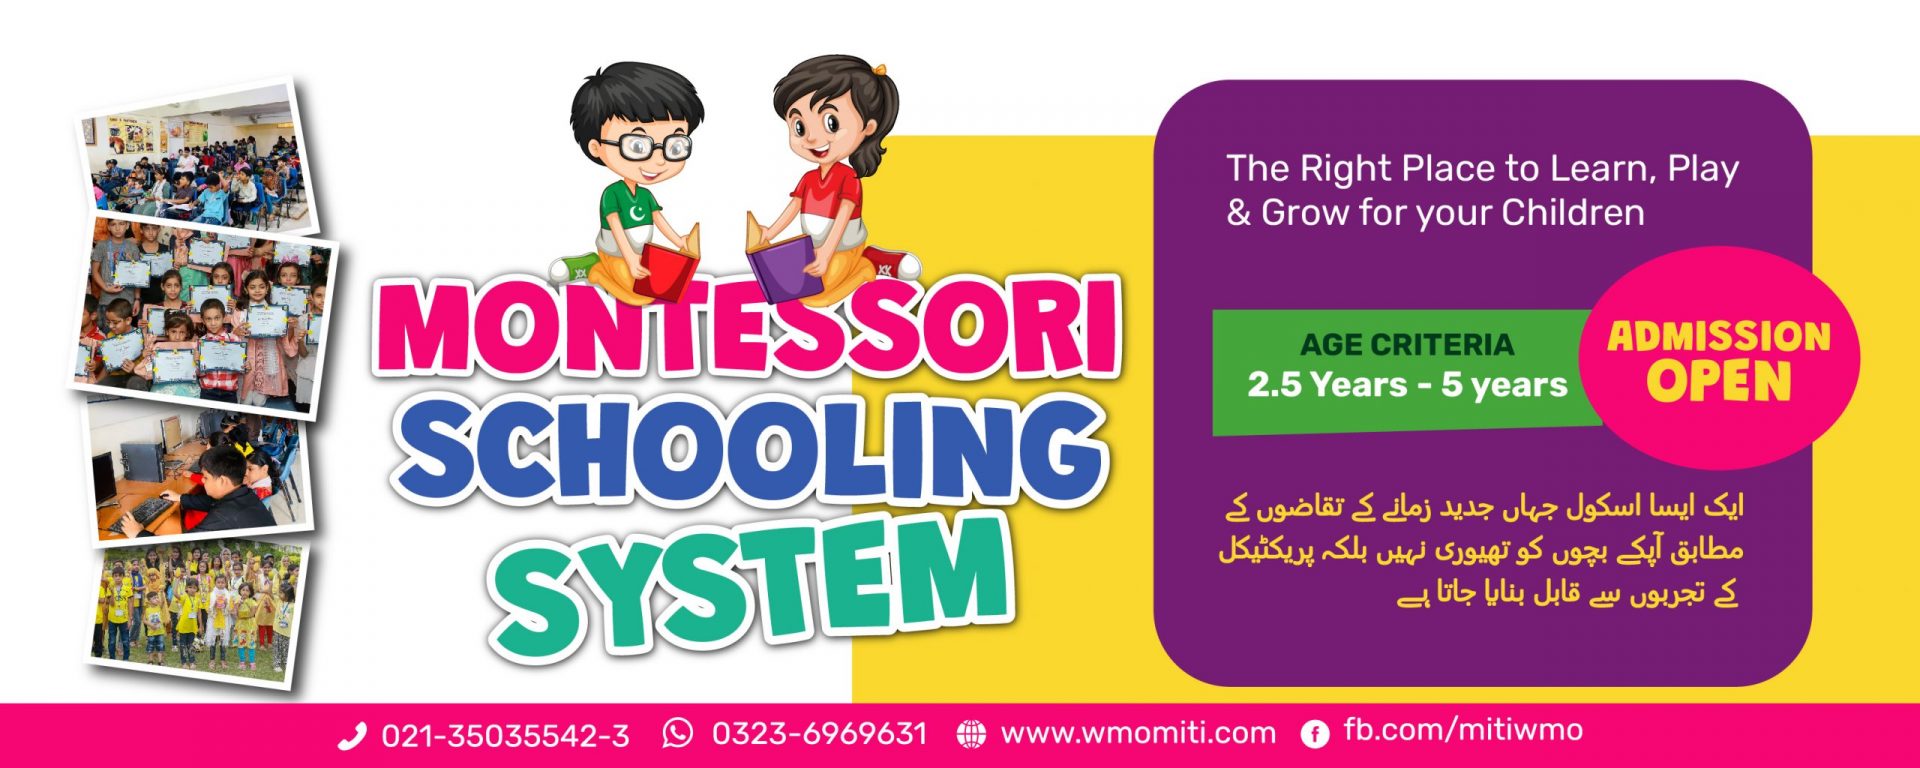 Memon Montessori Schooling System